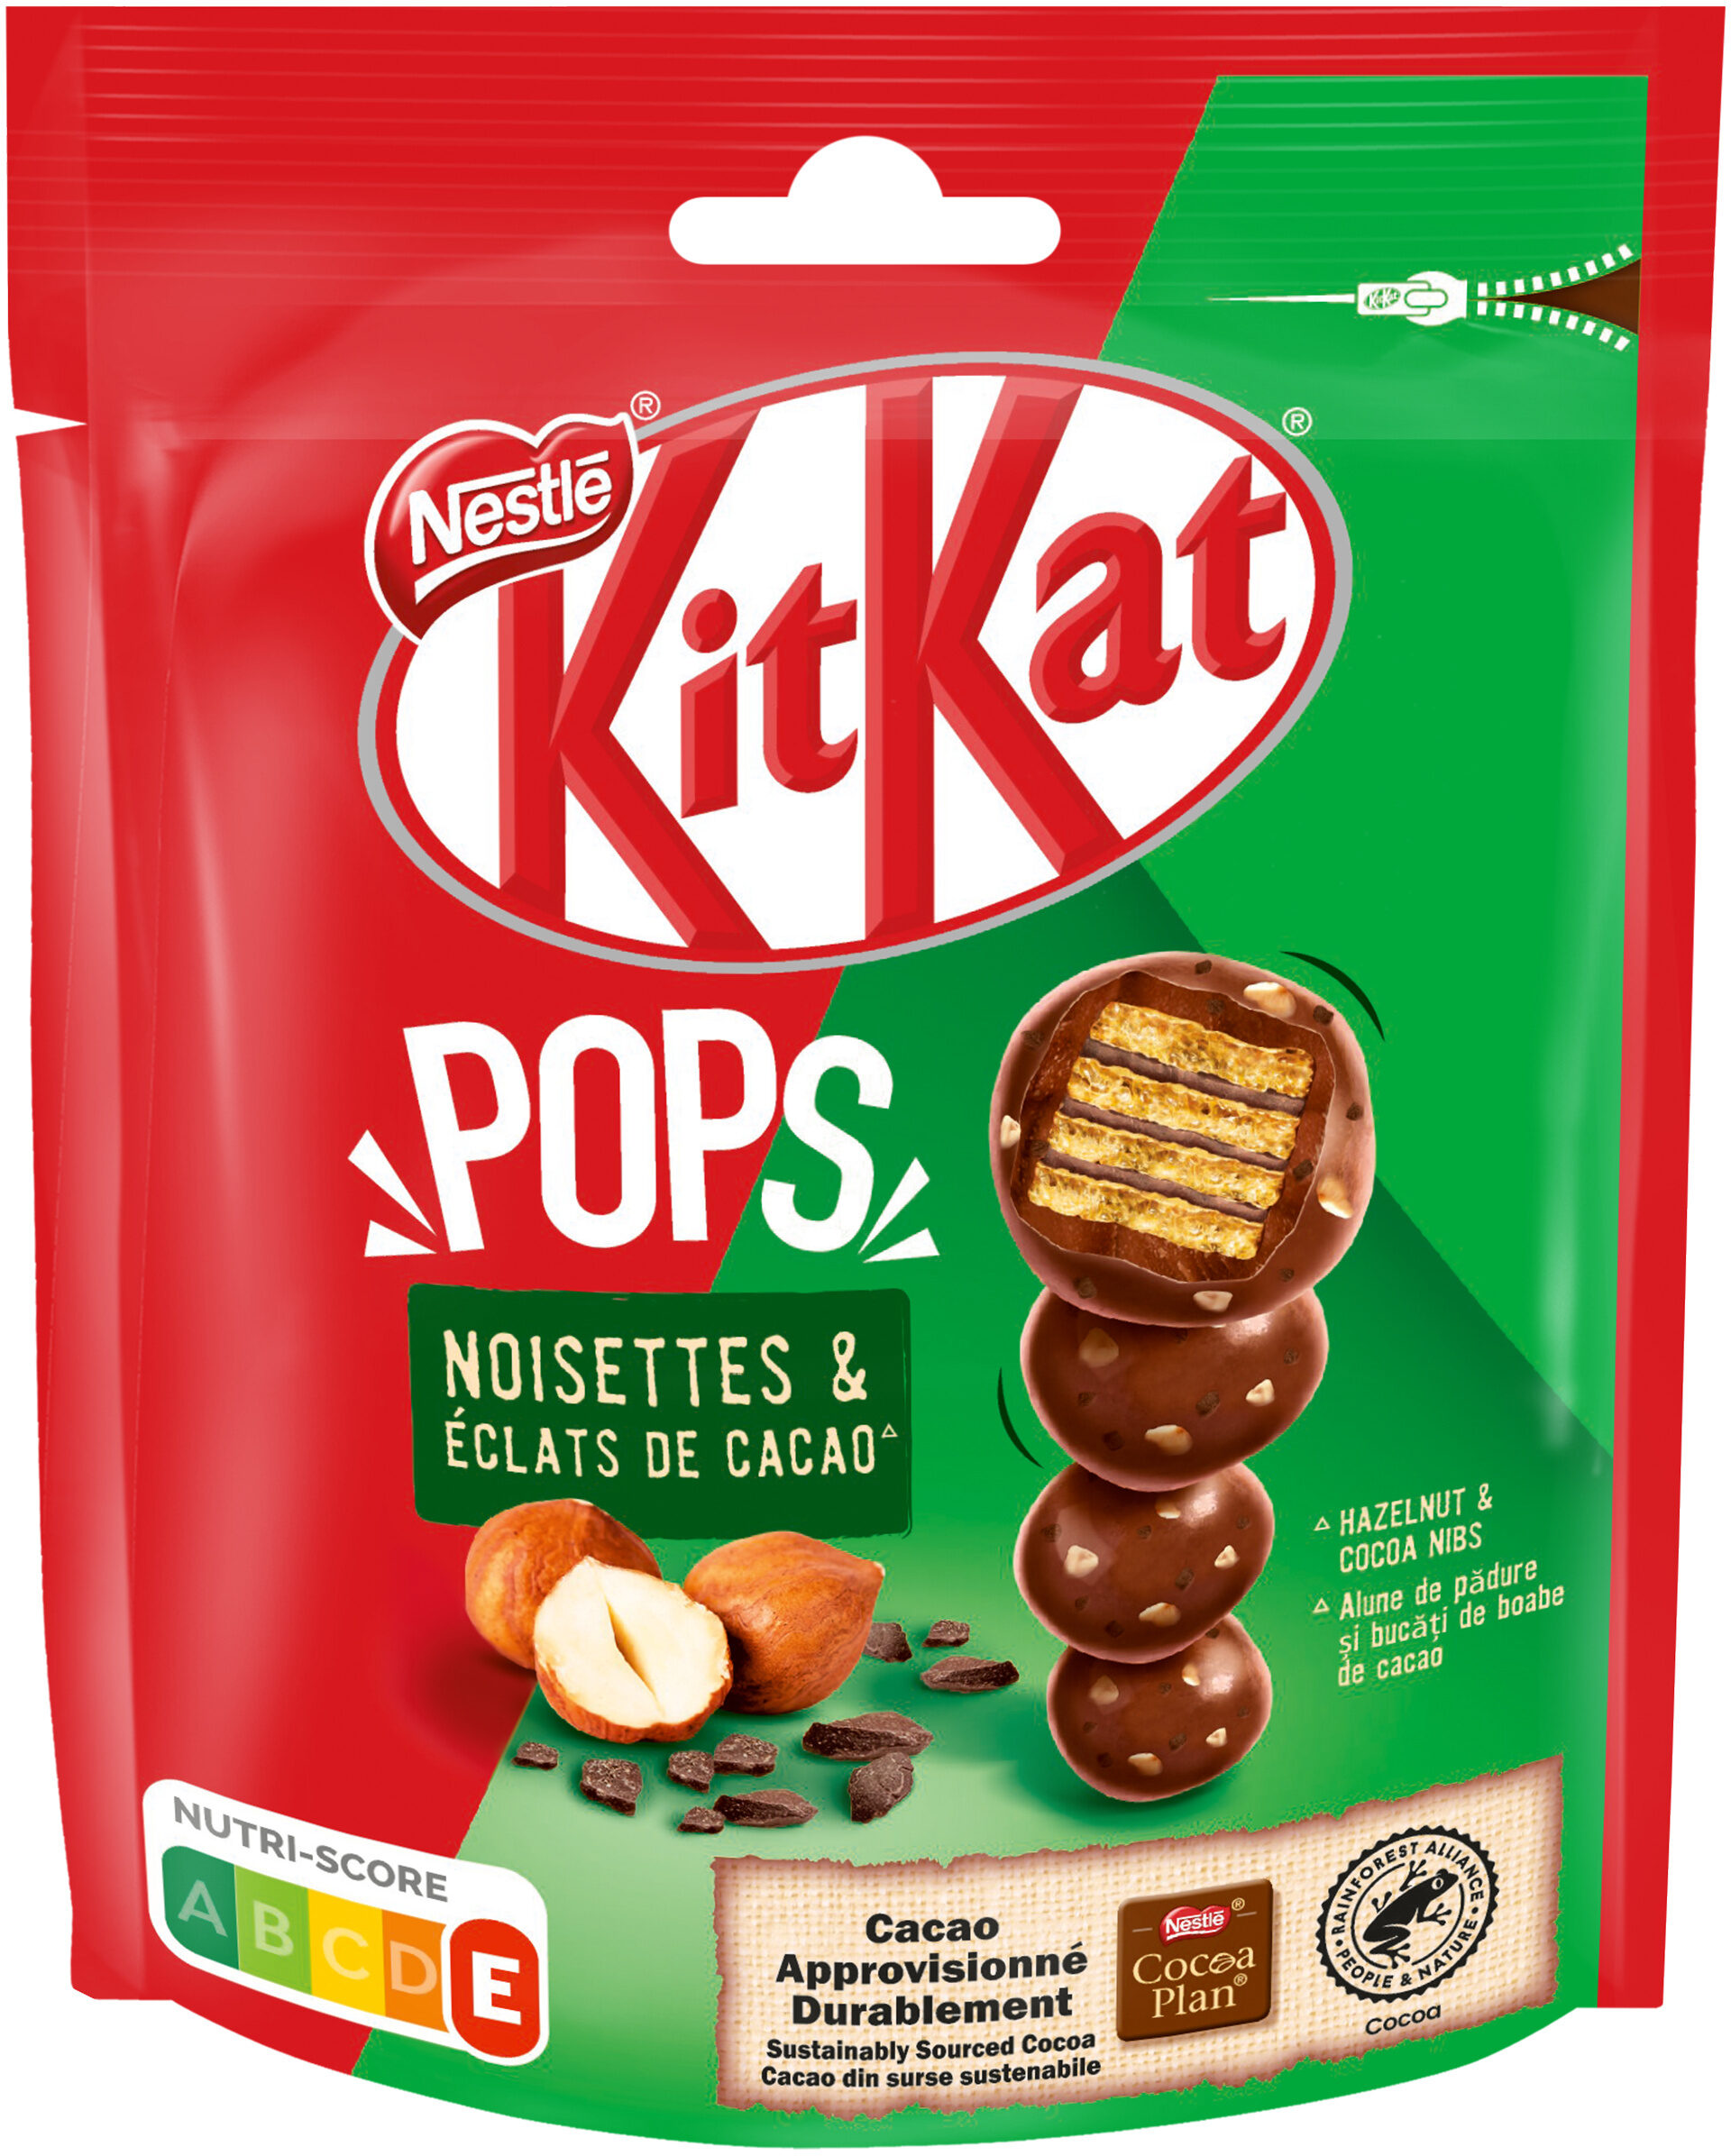 KITKAT POPS Noisettes & Eclats de cacao 110g - Product - fr